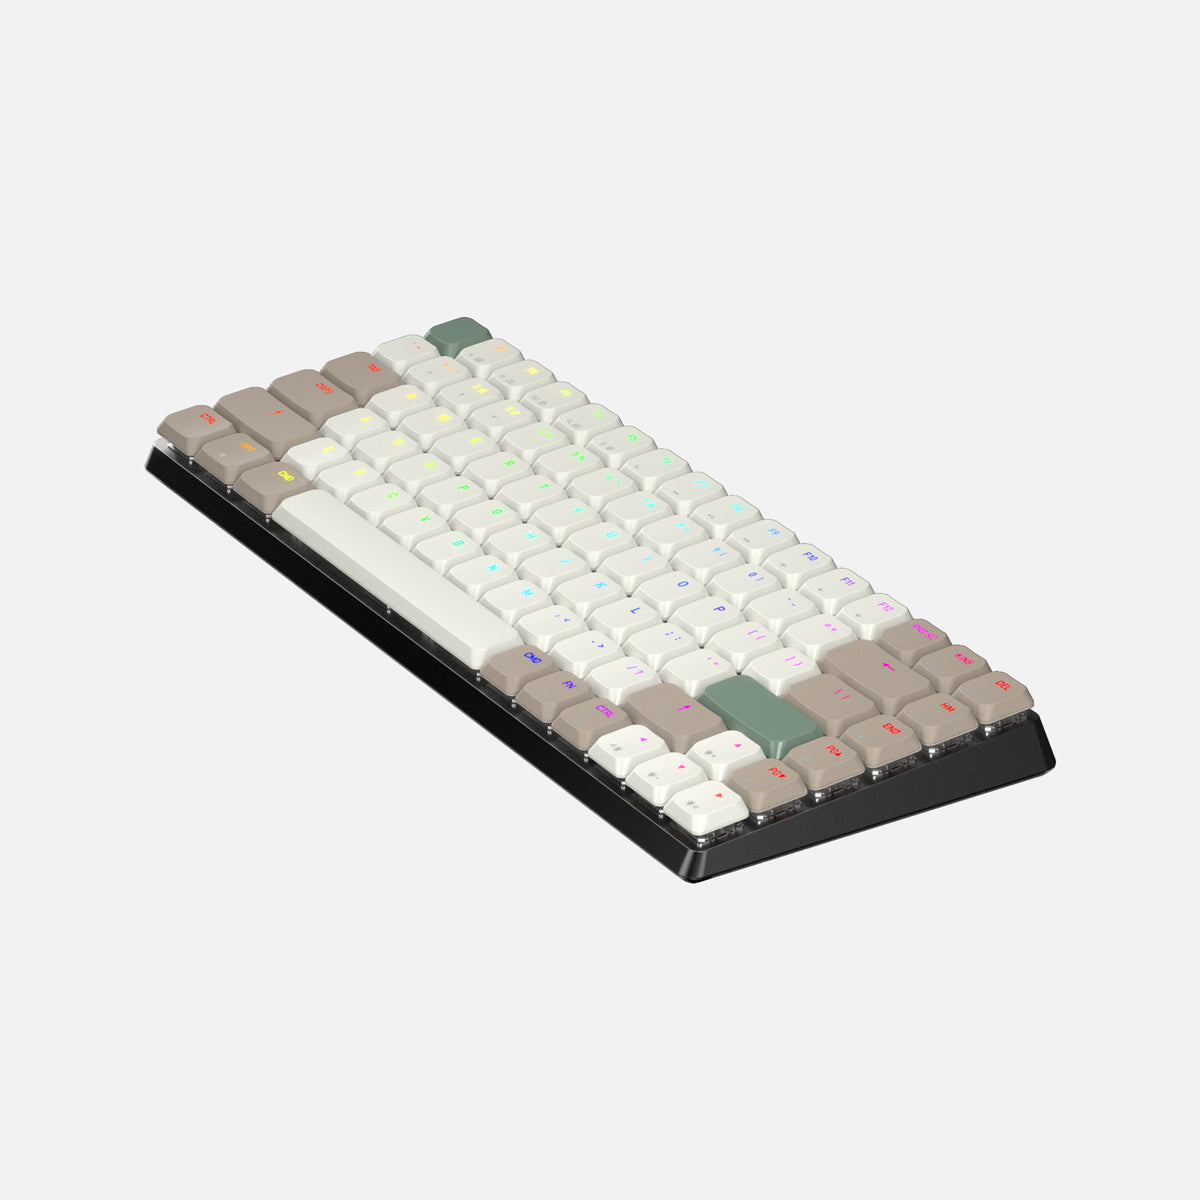 Cascade Keyboard Collection - AZIO Corporation